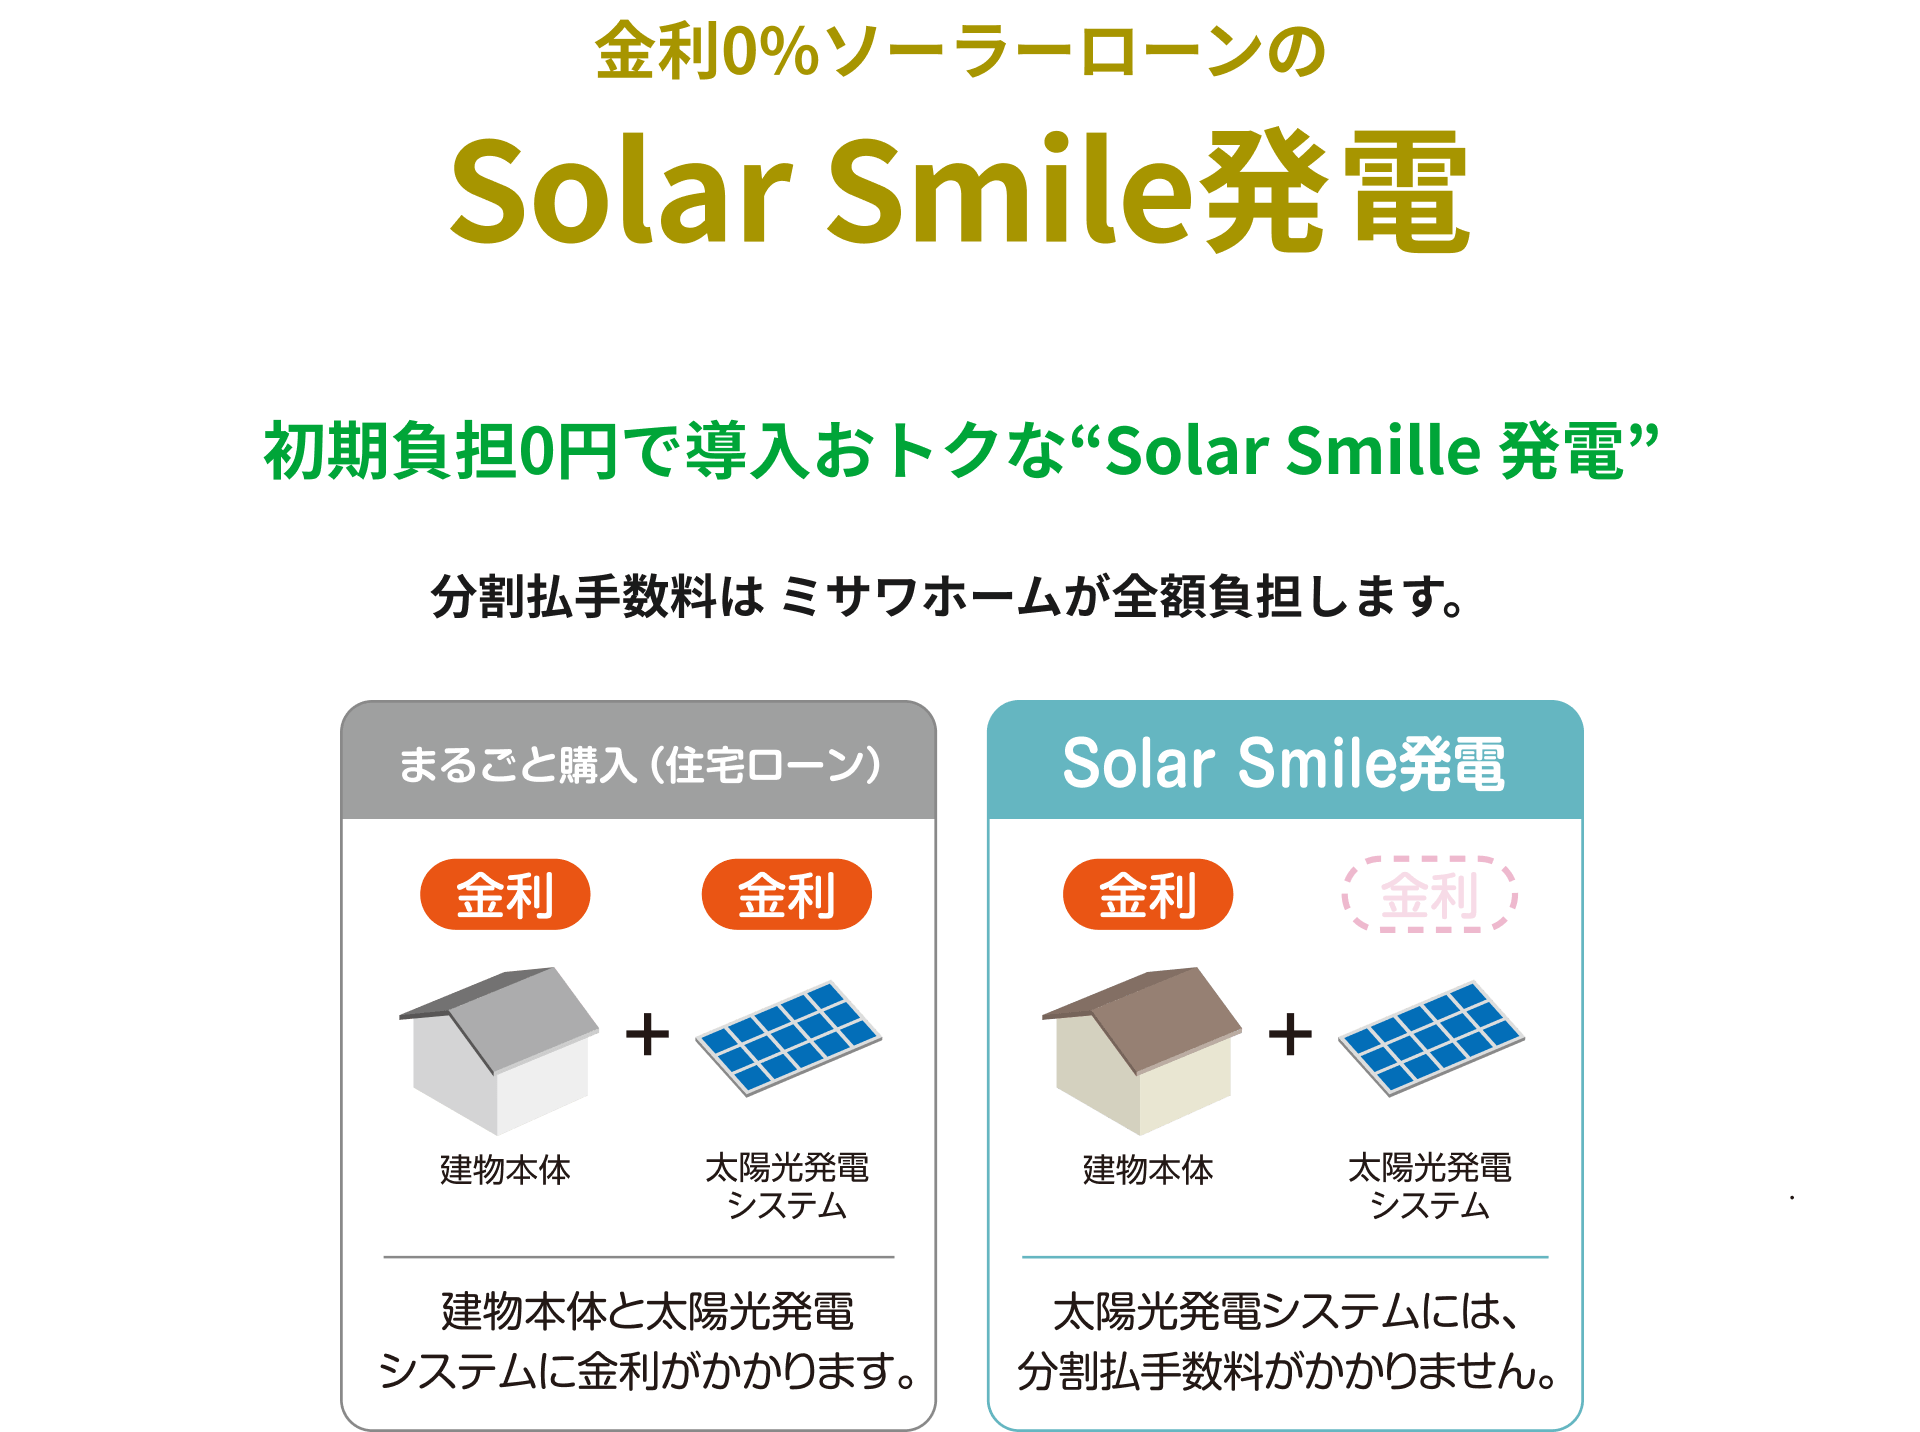 金利0%ソーラーローンのSolar Smile発電 初期負担0円で導入おトクな“Solar Smille 発電”分割払手数料はミサワホームが全額負担します。